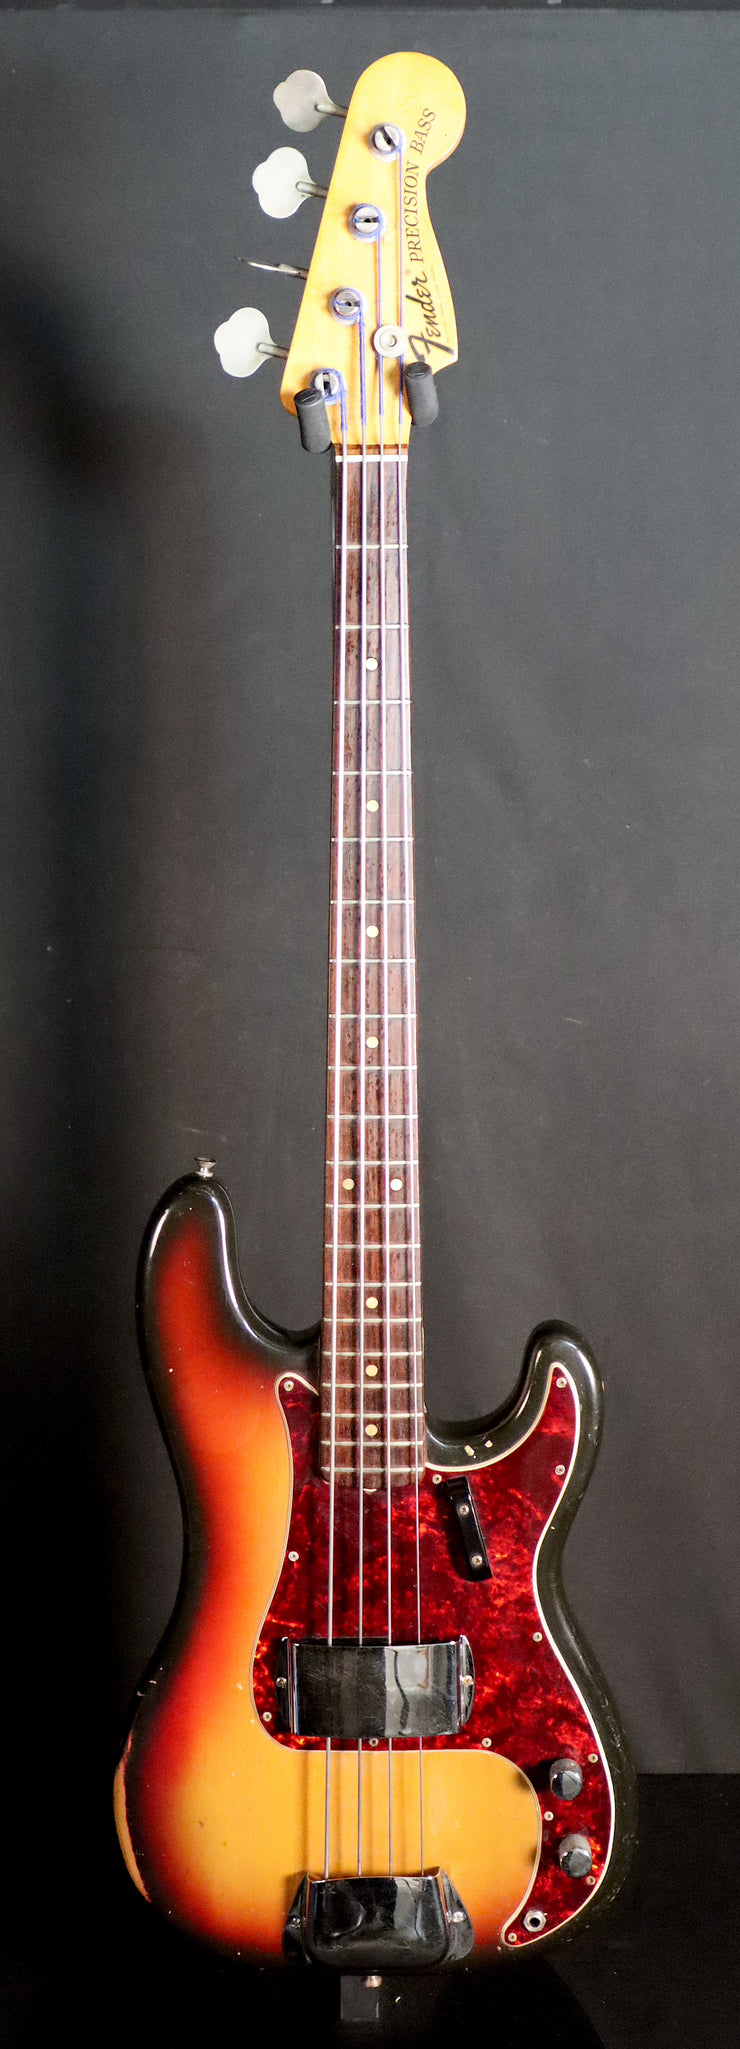 1972 Fender Precision